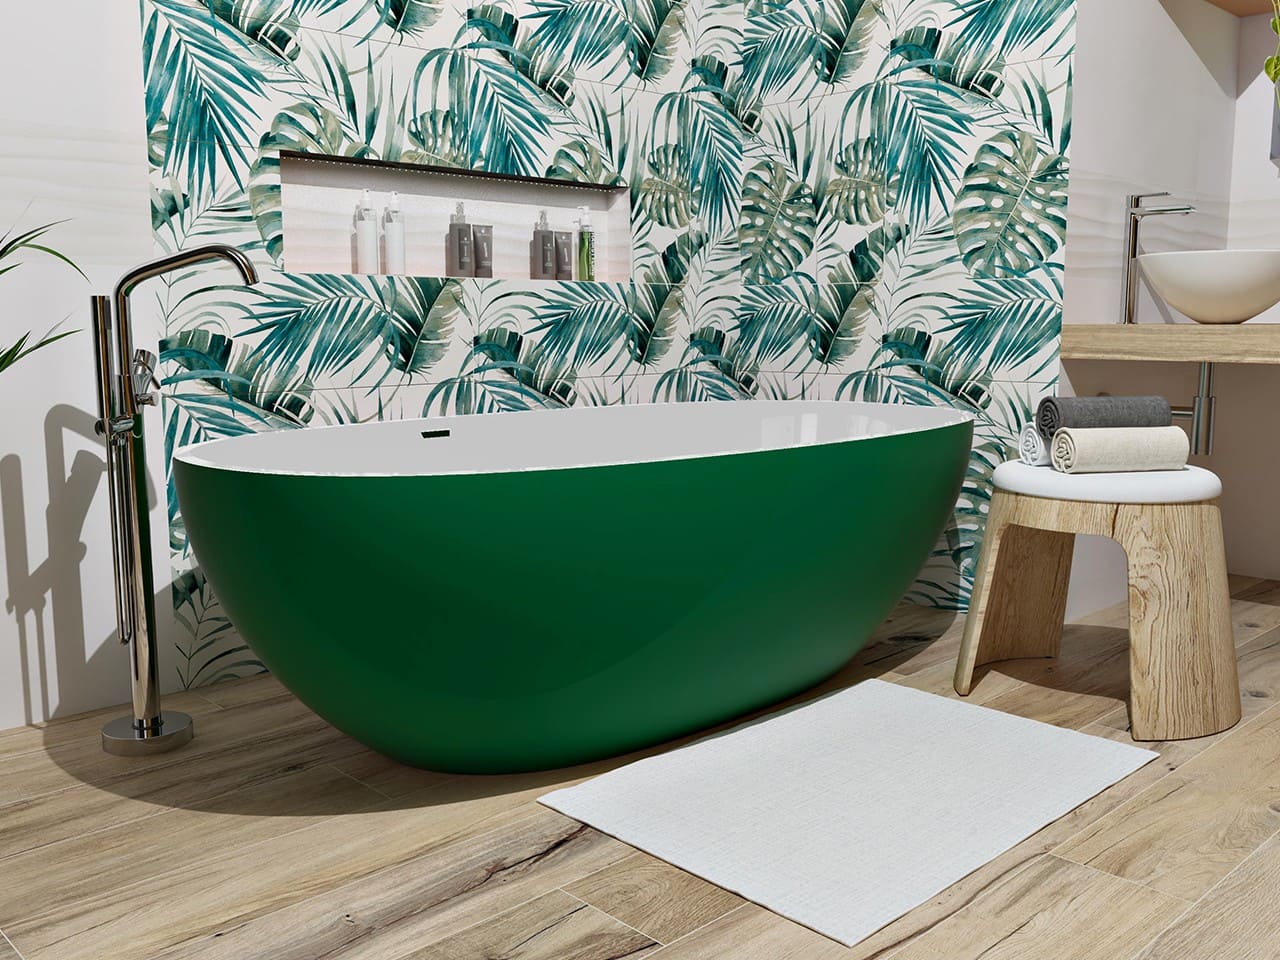 Vasca da bagno freestanding in solid surface con esterno verde